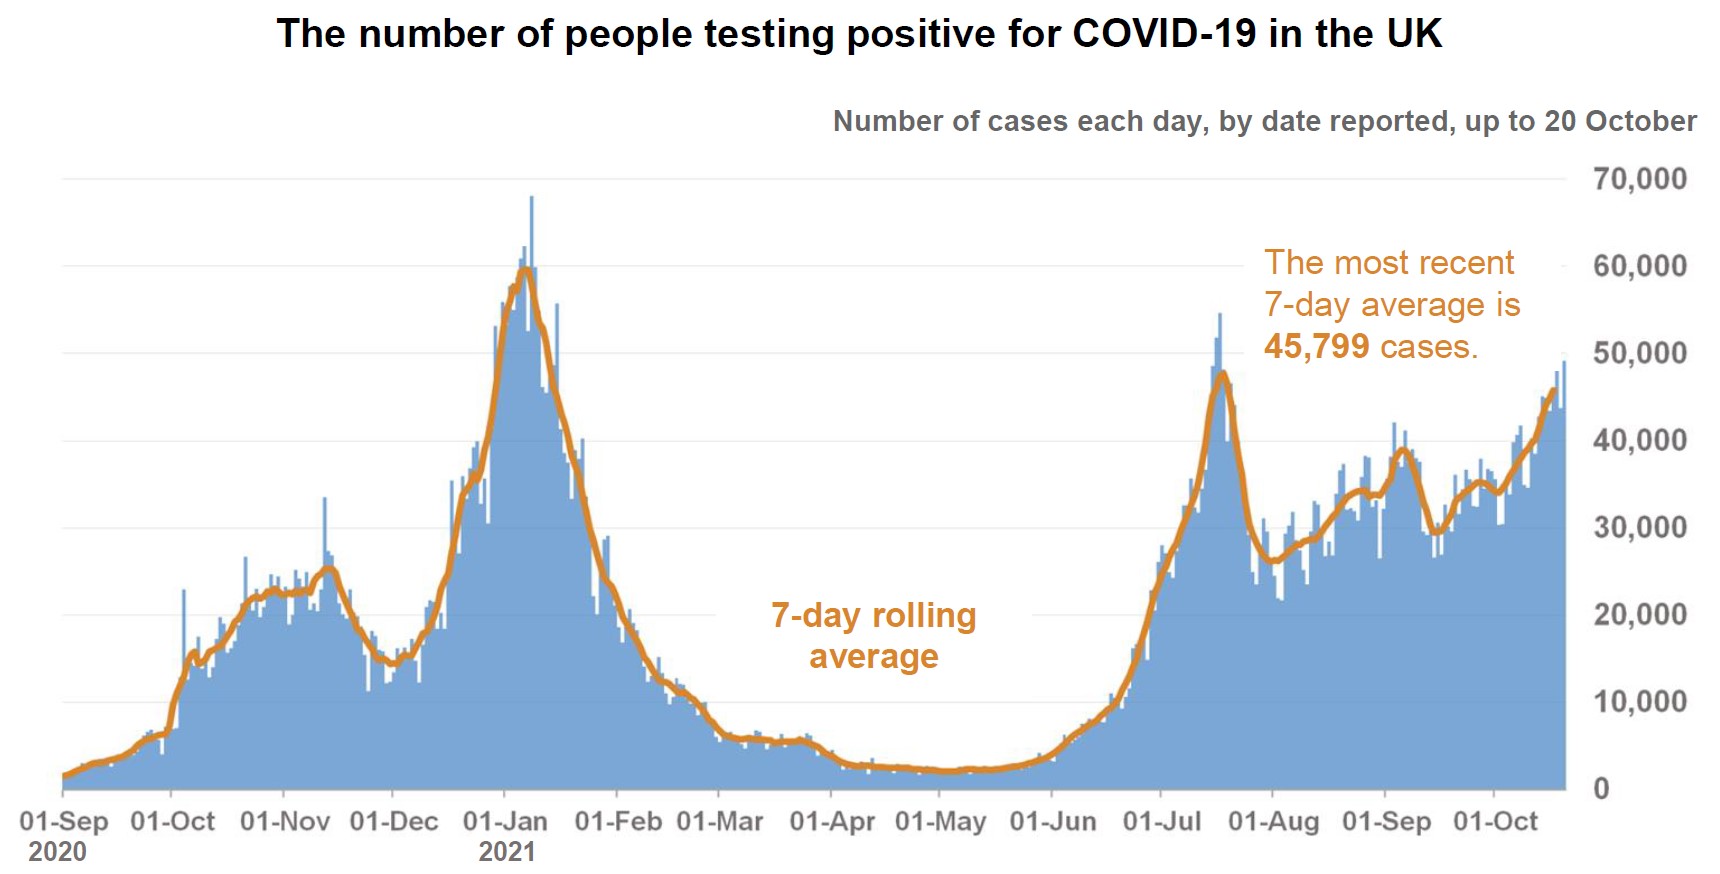 Sajid Javid coronavirus briefing 20-10-2021 number of people testing positive - enlarge